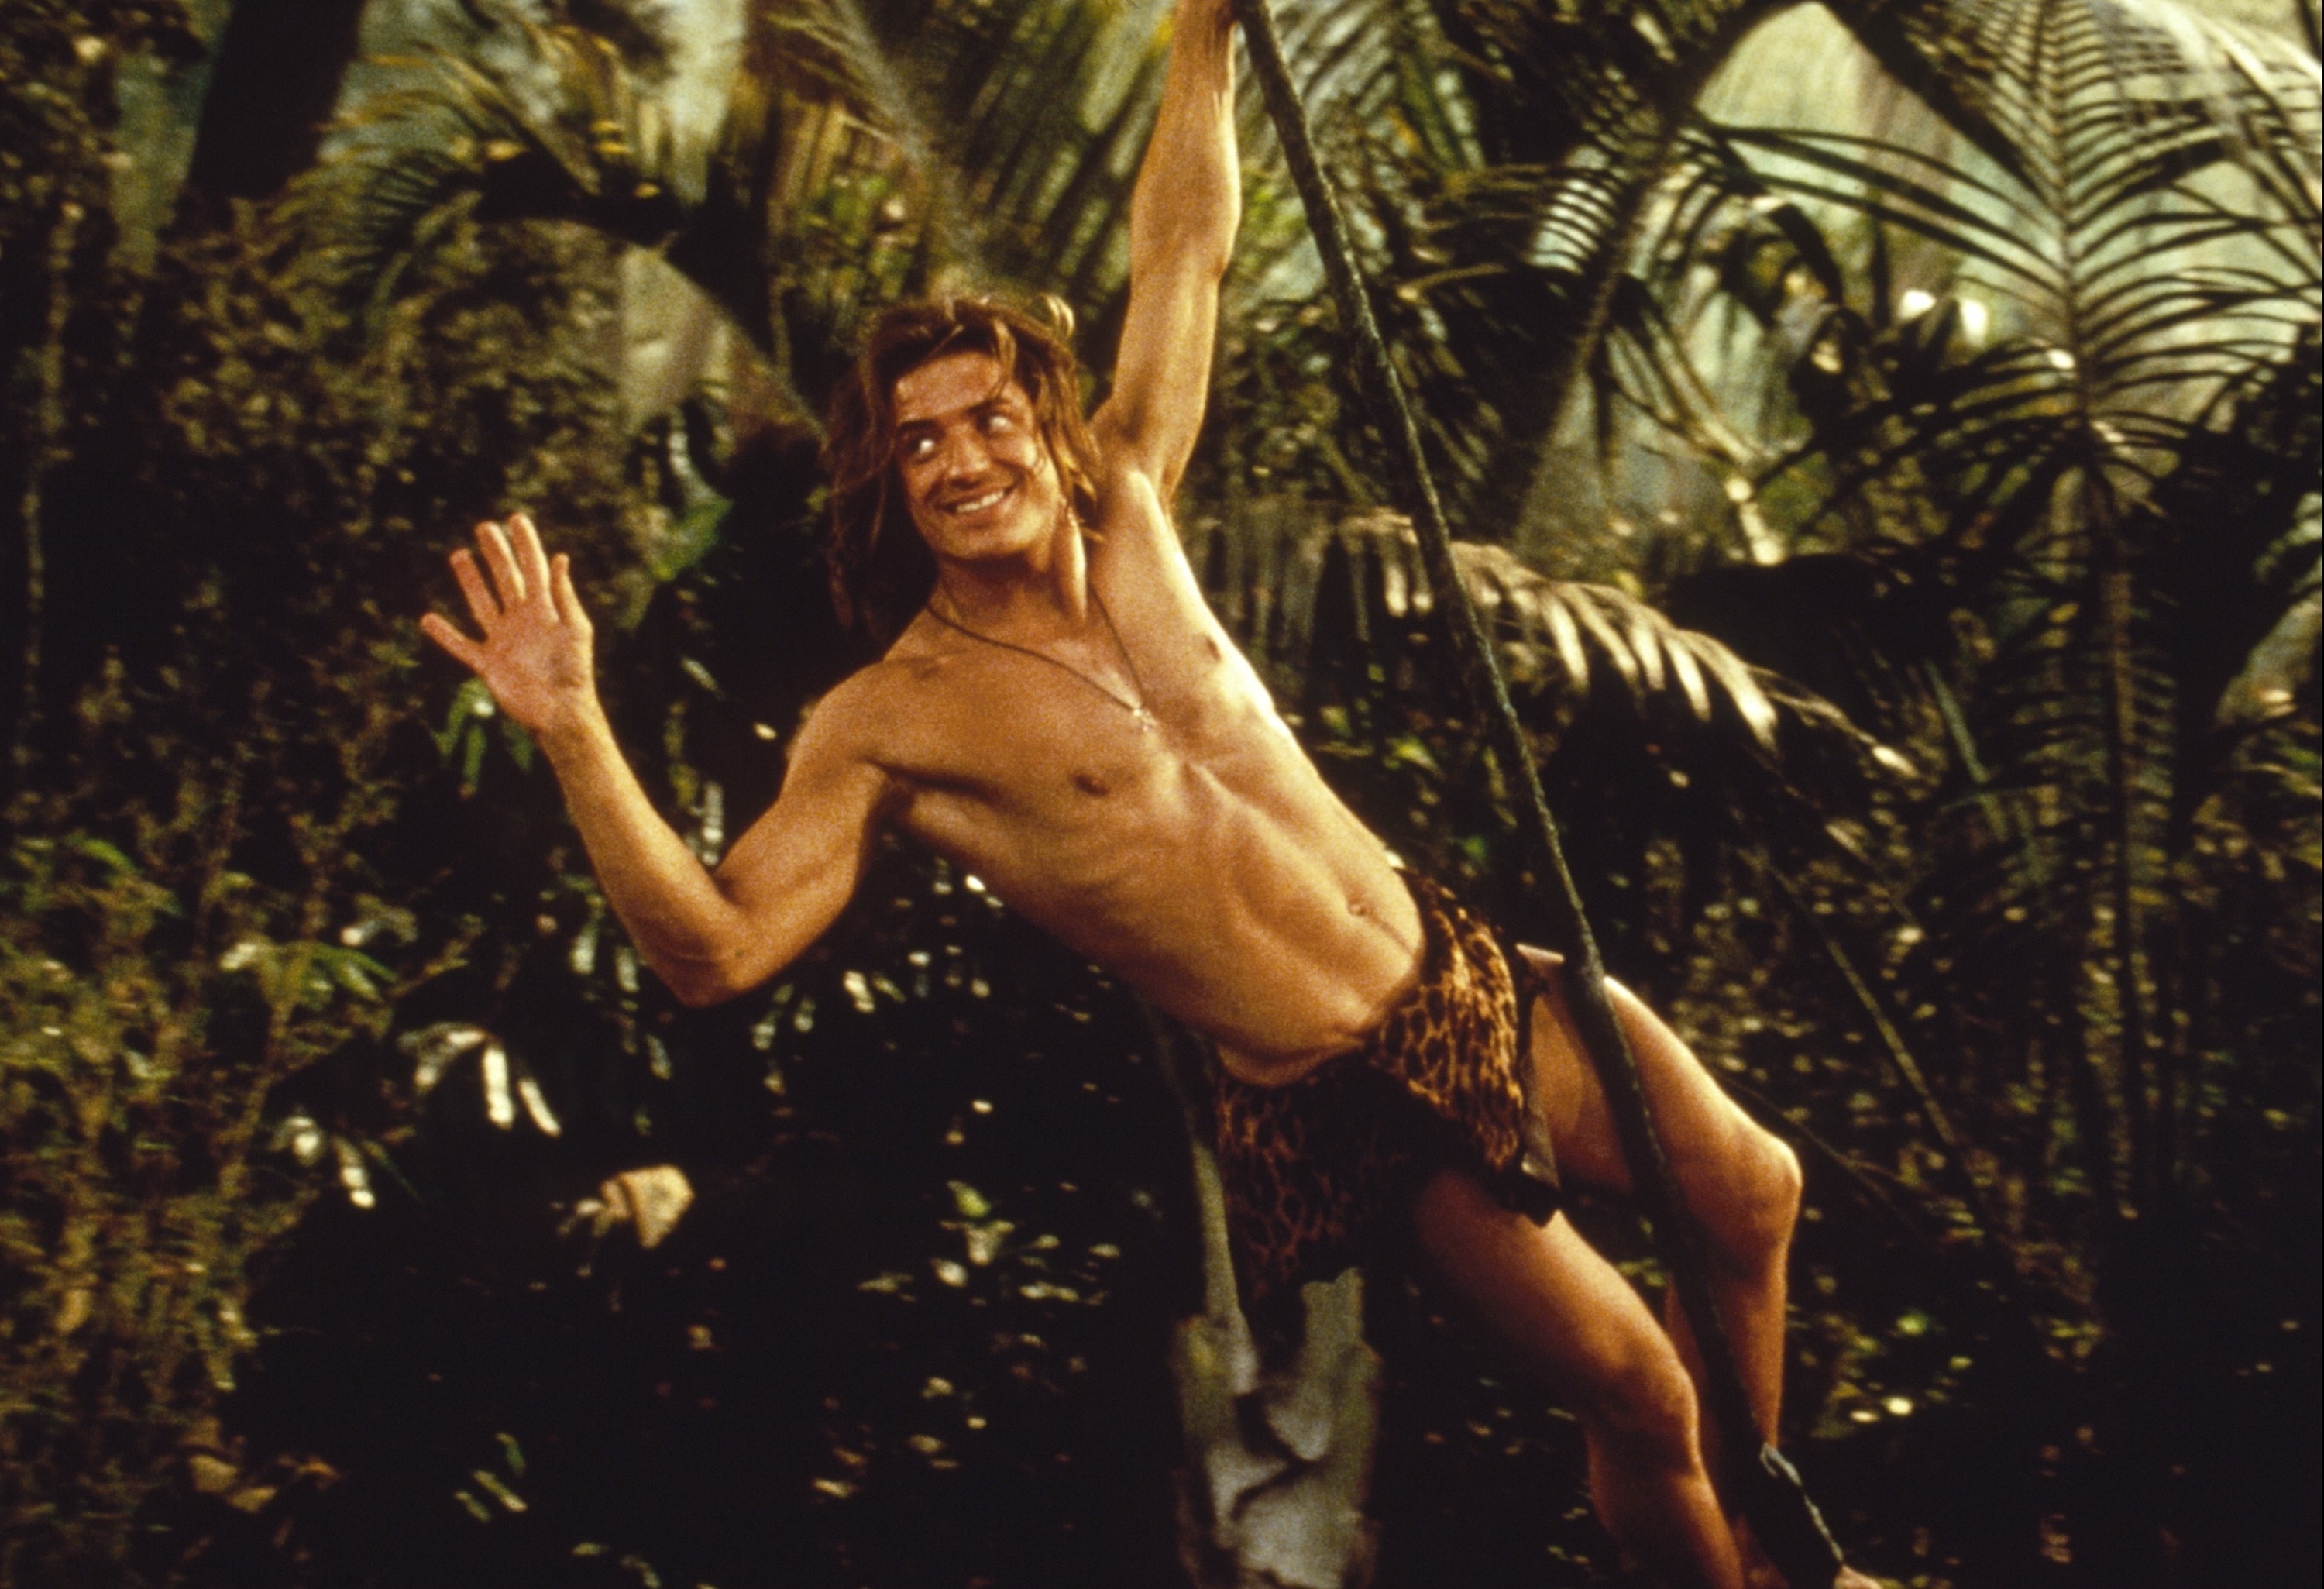 A man in a loin cloth swings through the jungle